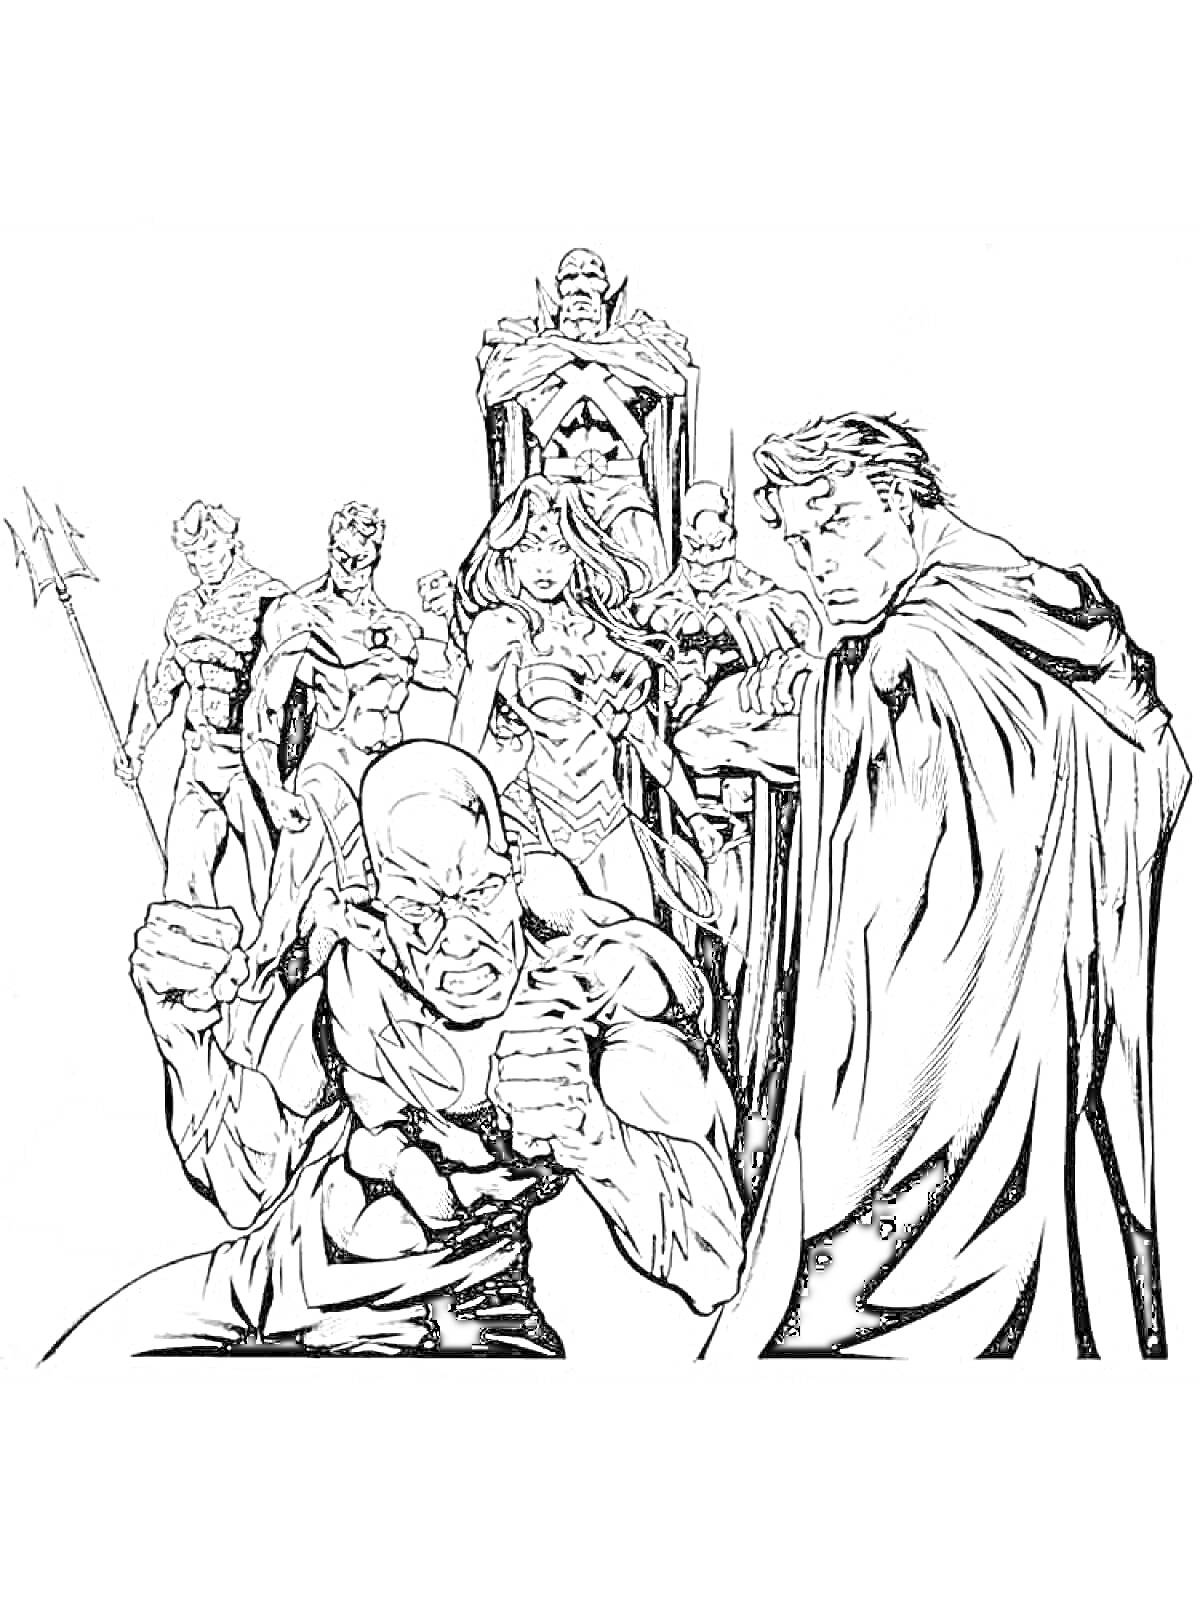 Члены Лиги Справедливости: мужчина с трезубцем, мужчина в полумаске с копьем, женщина с мечом и щитом, мужчина в защитном костюме, мужчина с буквой 